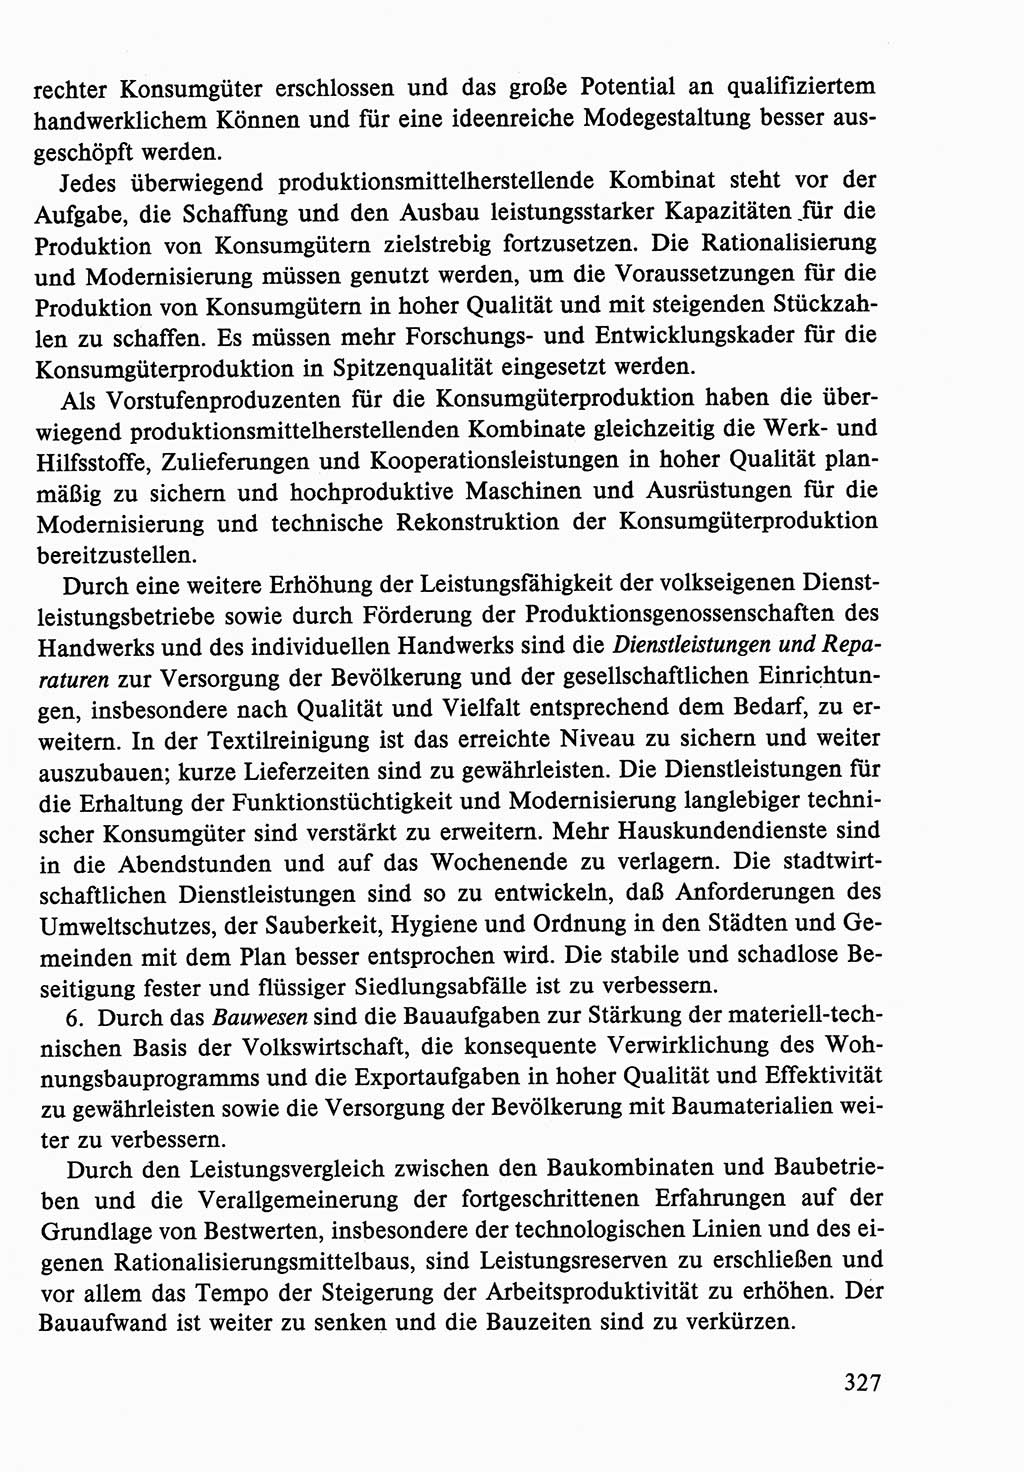 Dokumente der Sozialistischen Einheitspartei Deutschlands (SED) [Deutsche Demokratische Republik (DDR)] 1986-1987, Seite 327 (Dok. SED DDR 1986-1987, S. 327)